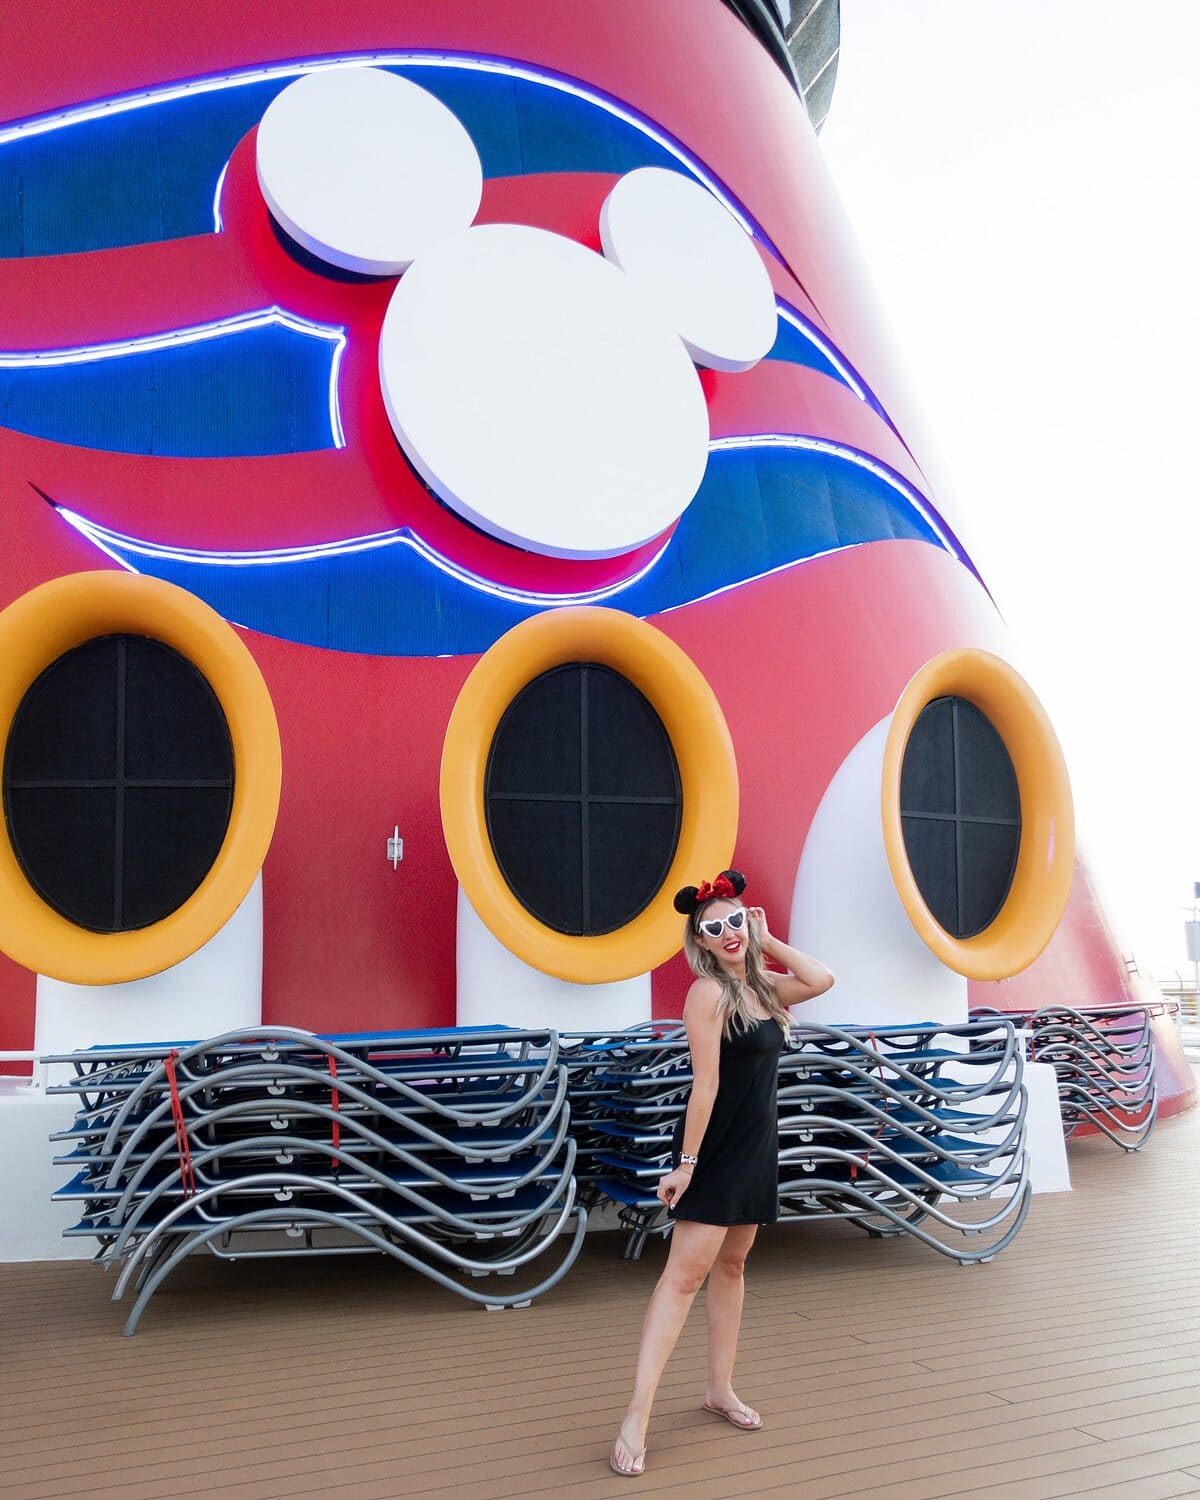 Influencer Meg O. (@mego) on the Disney Magic cruise ship